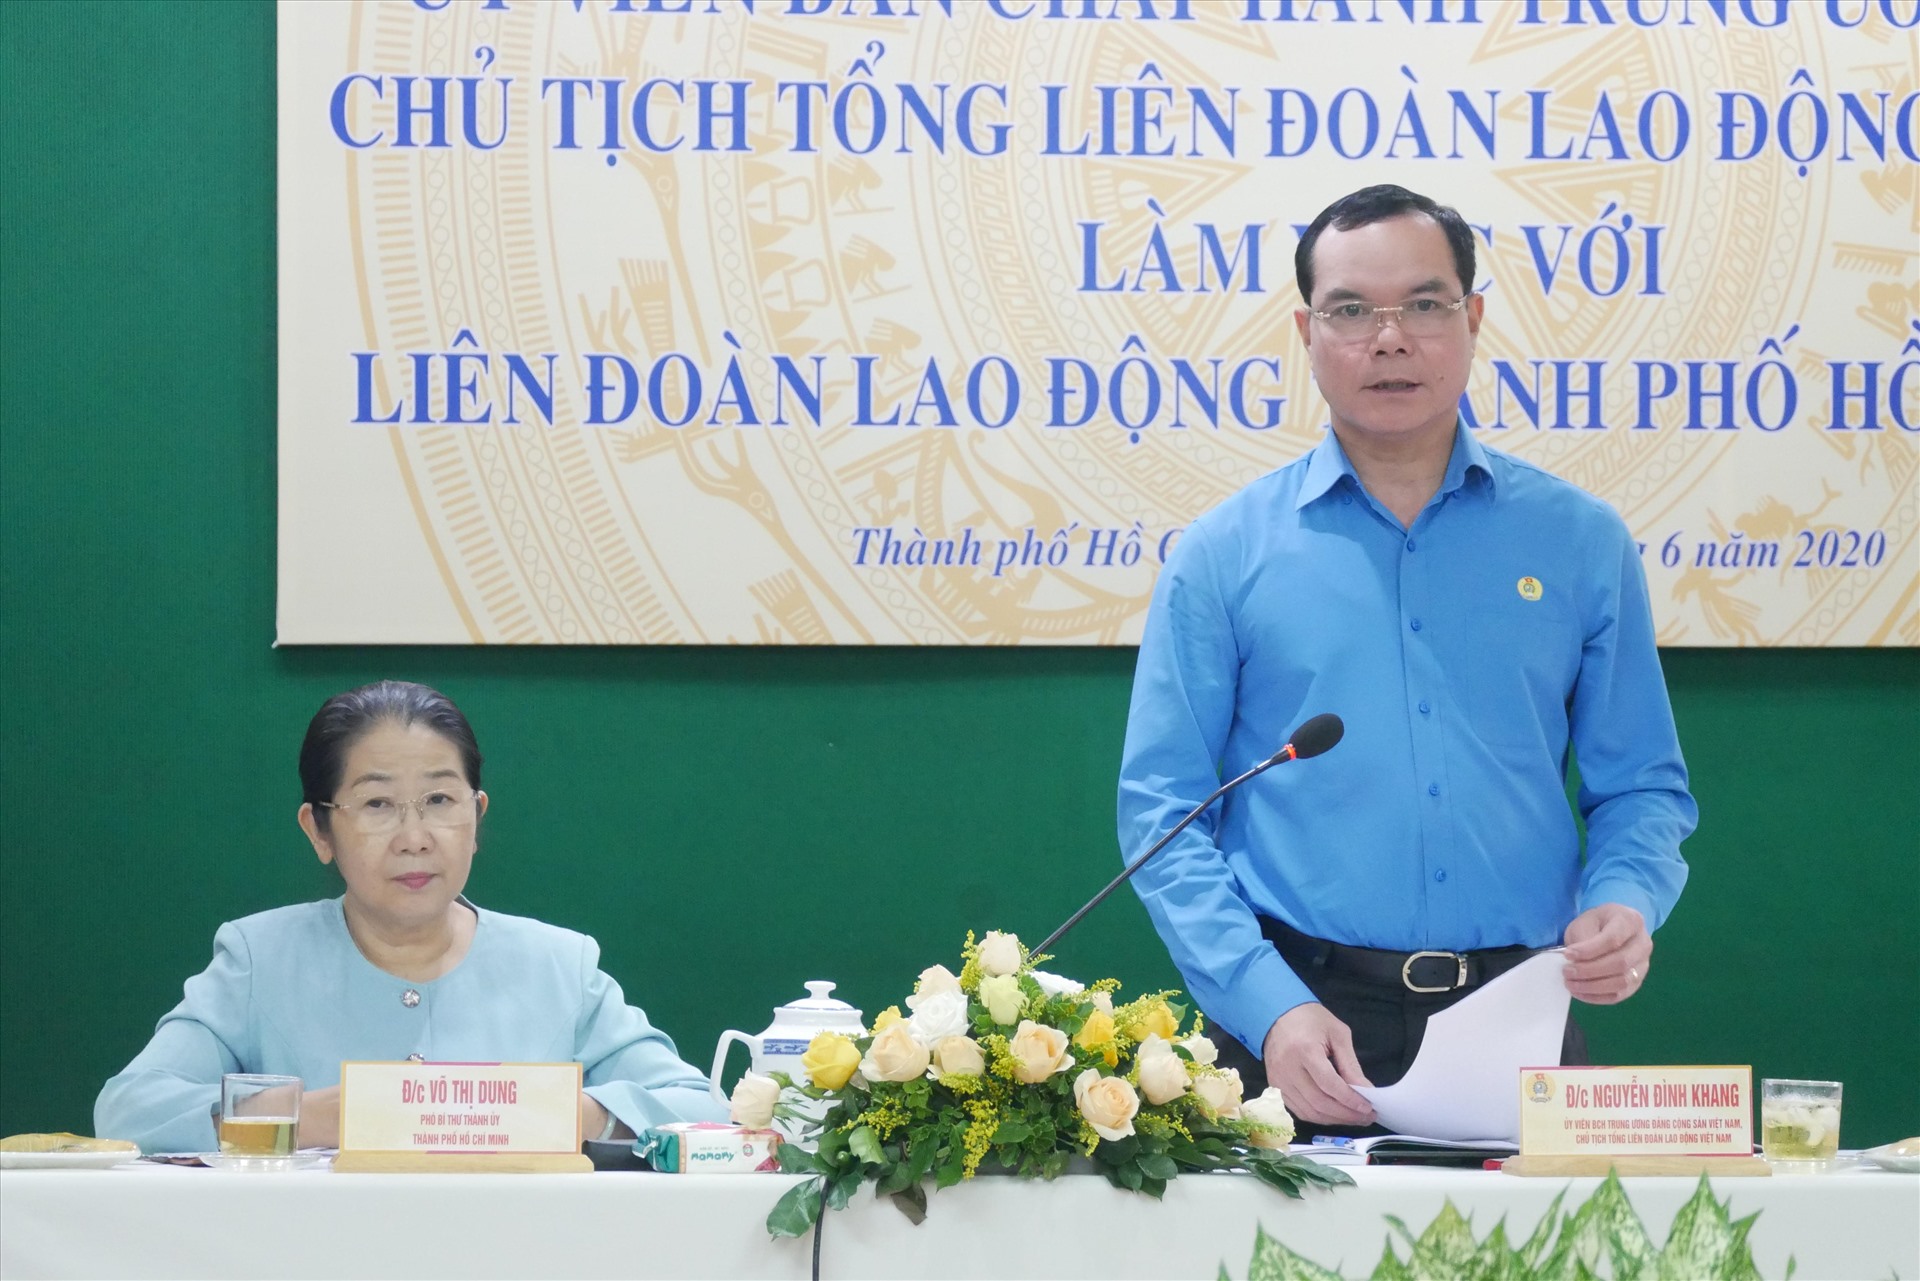 Chủ tịch Tổng LDF9LĐVn Nguyễn Đình Khang phát biểu tại buổi làm việc. Ảnh Anh Tú